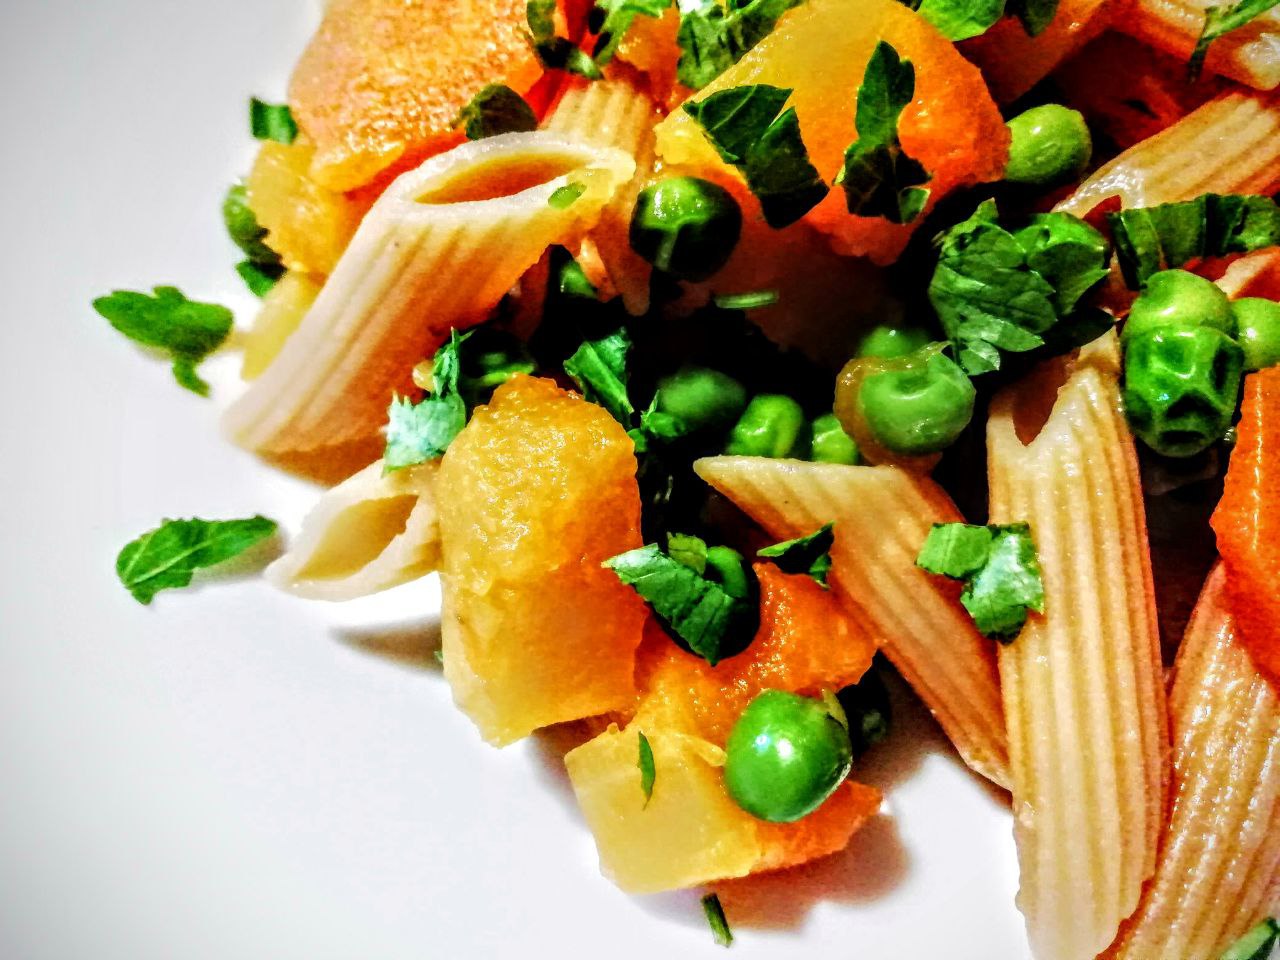 Primi piatti a base di verdure senza burro e senza formaggio pasta di lenticchie rosse con piselli zucca e carote!